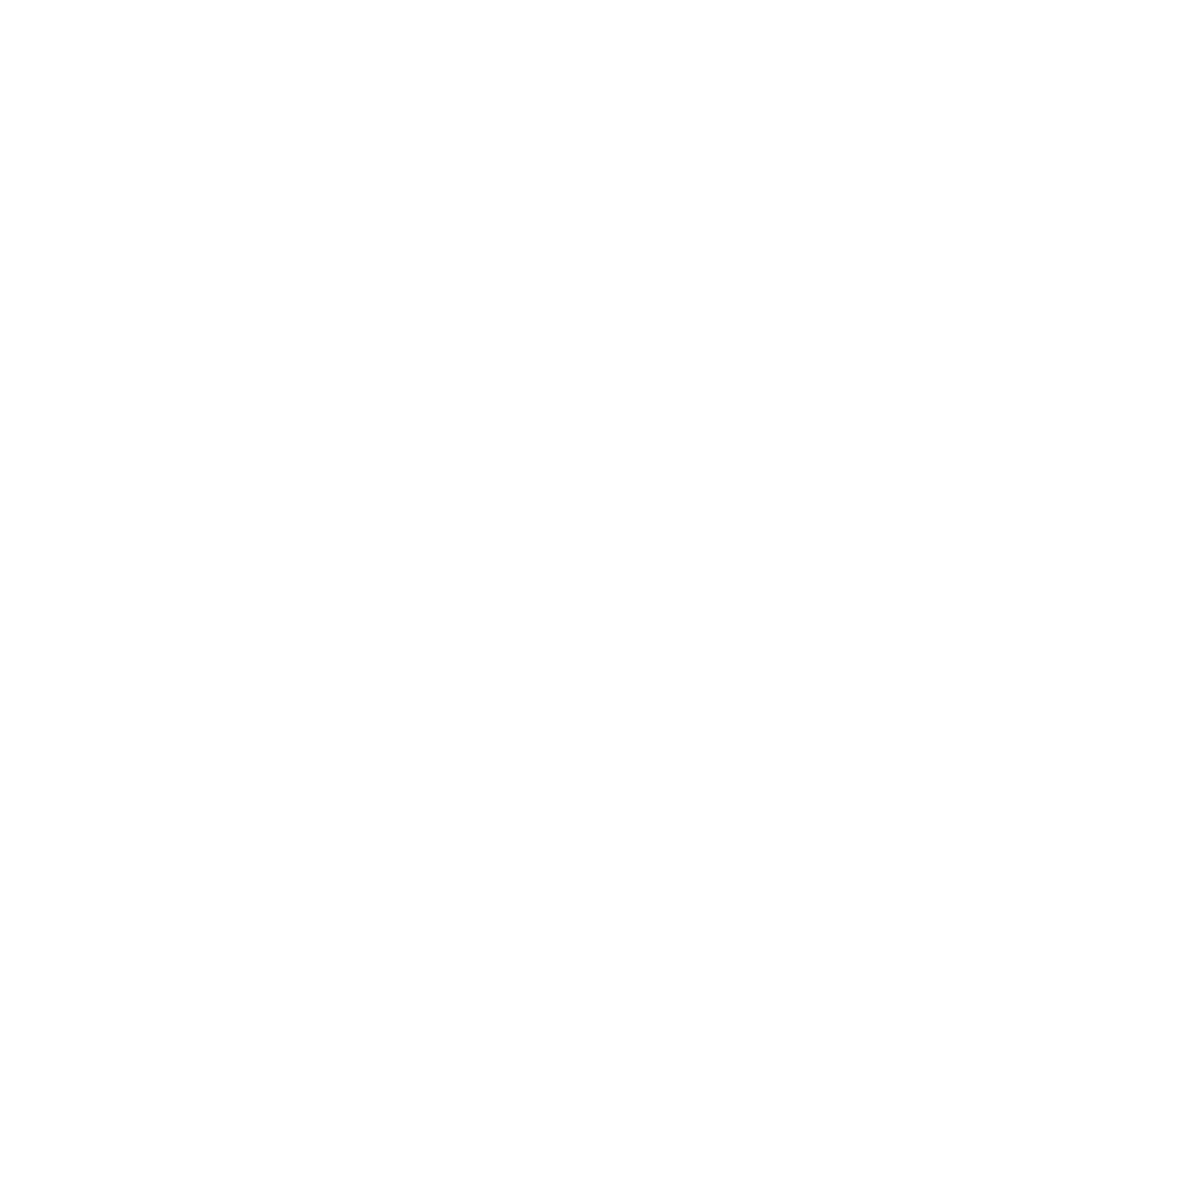 Coop (1)